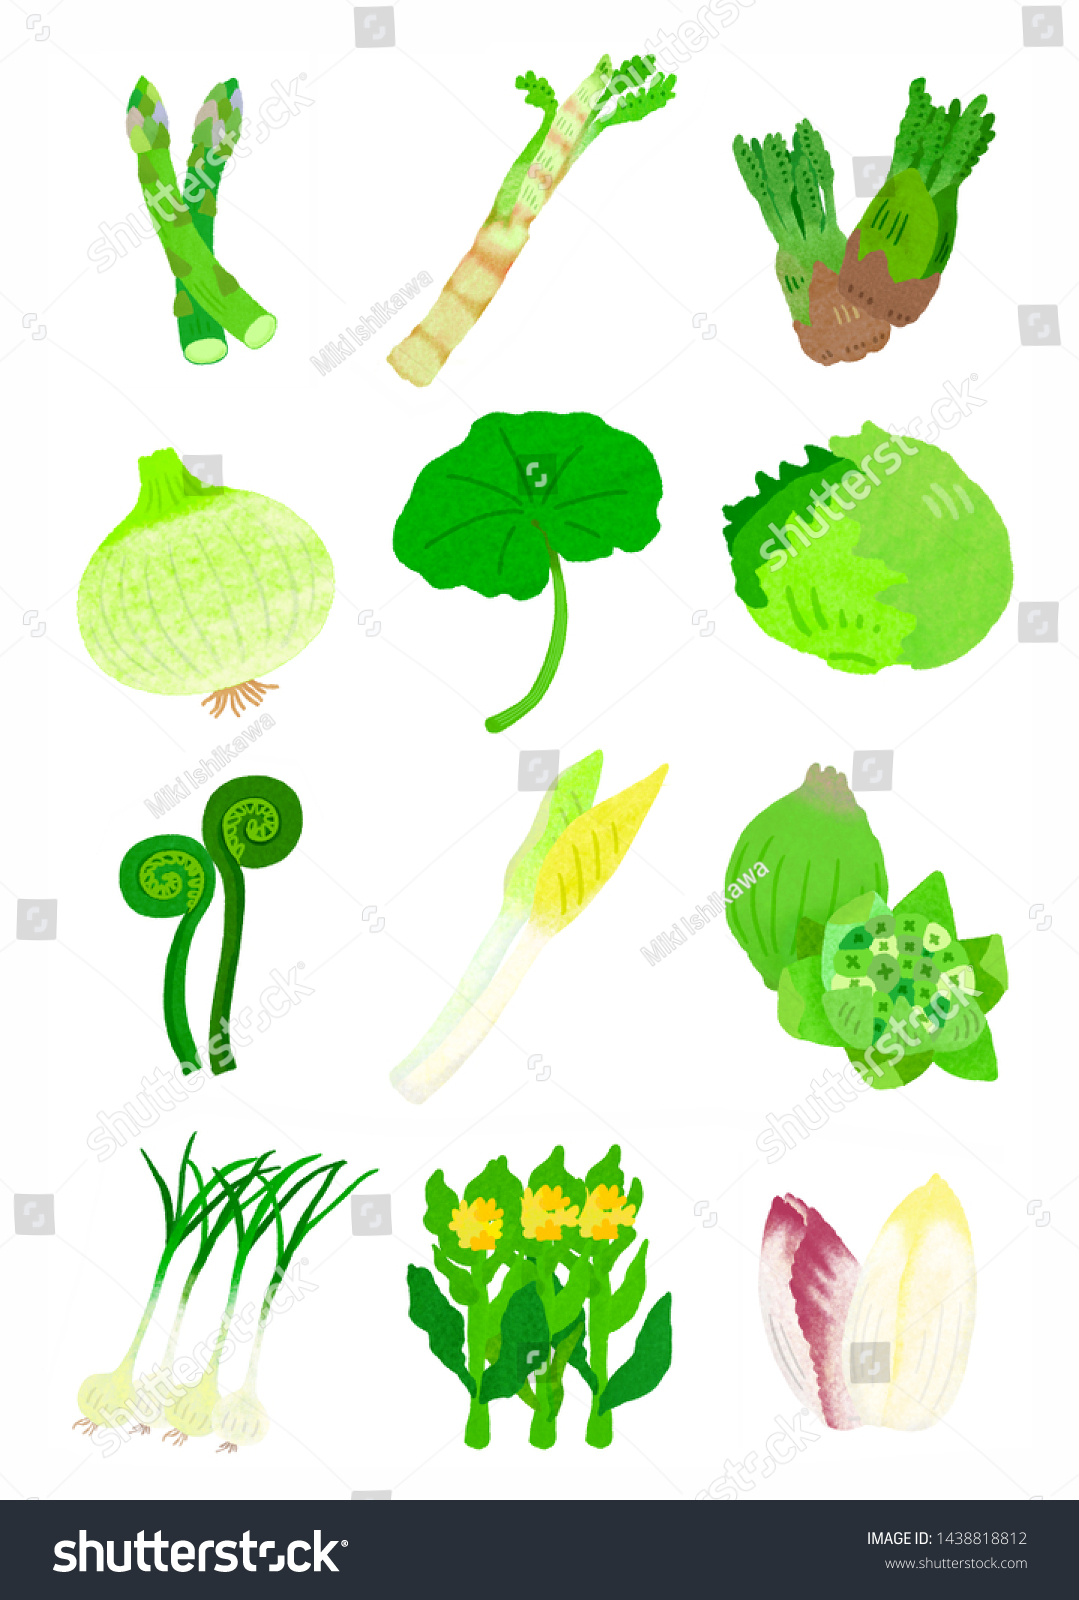 これは日本の春野菜です 家庭料理の具です 野菜と野菜です 日本の食材のイラストです のイラスト素材 Shutterstock